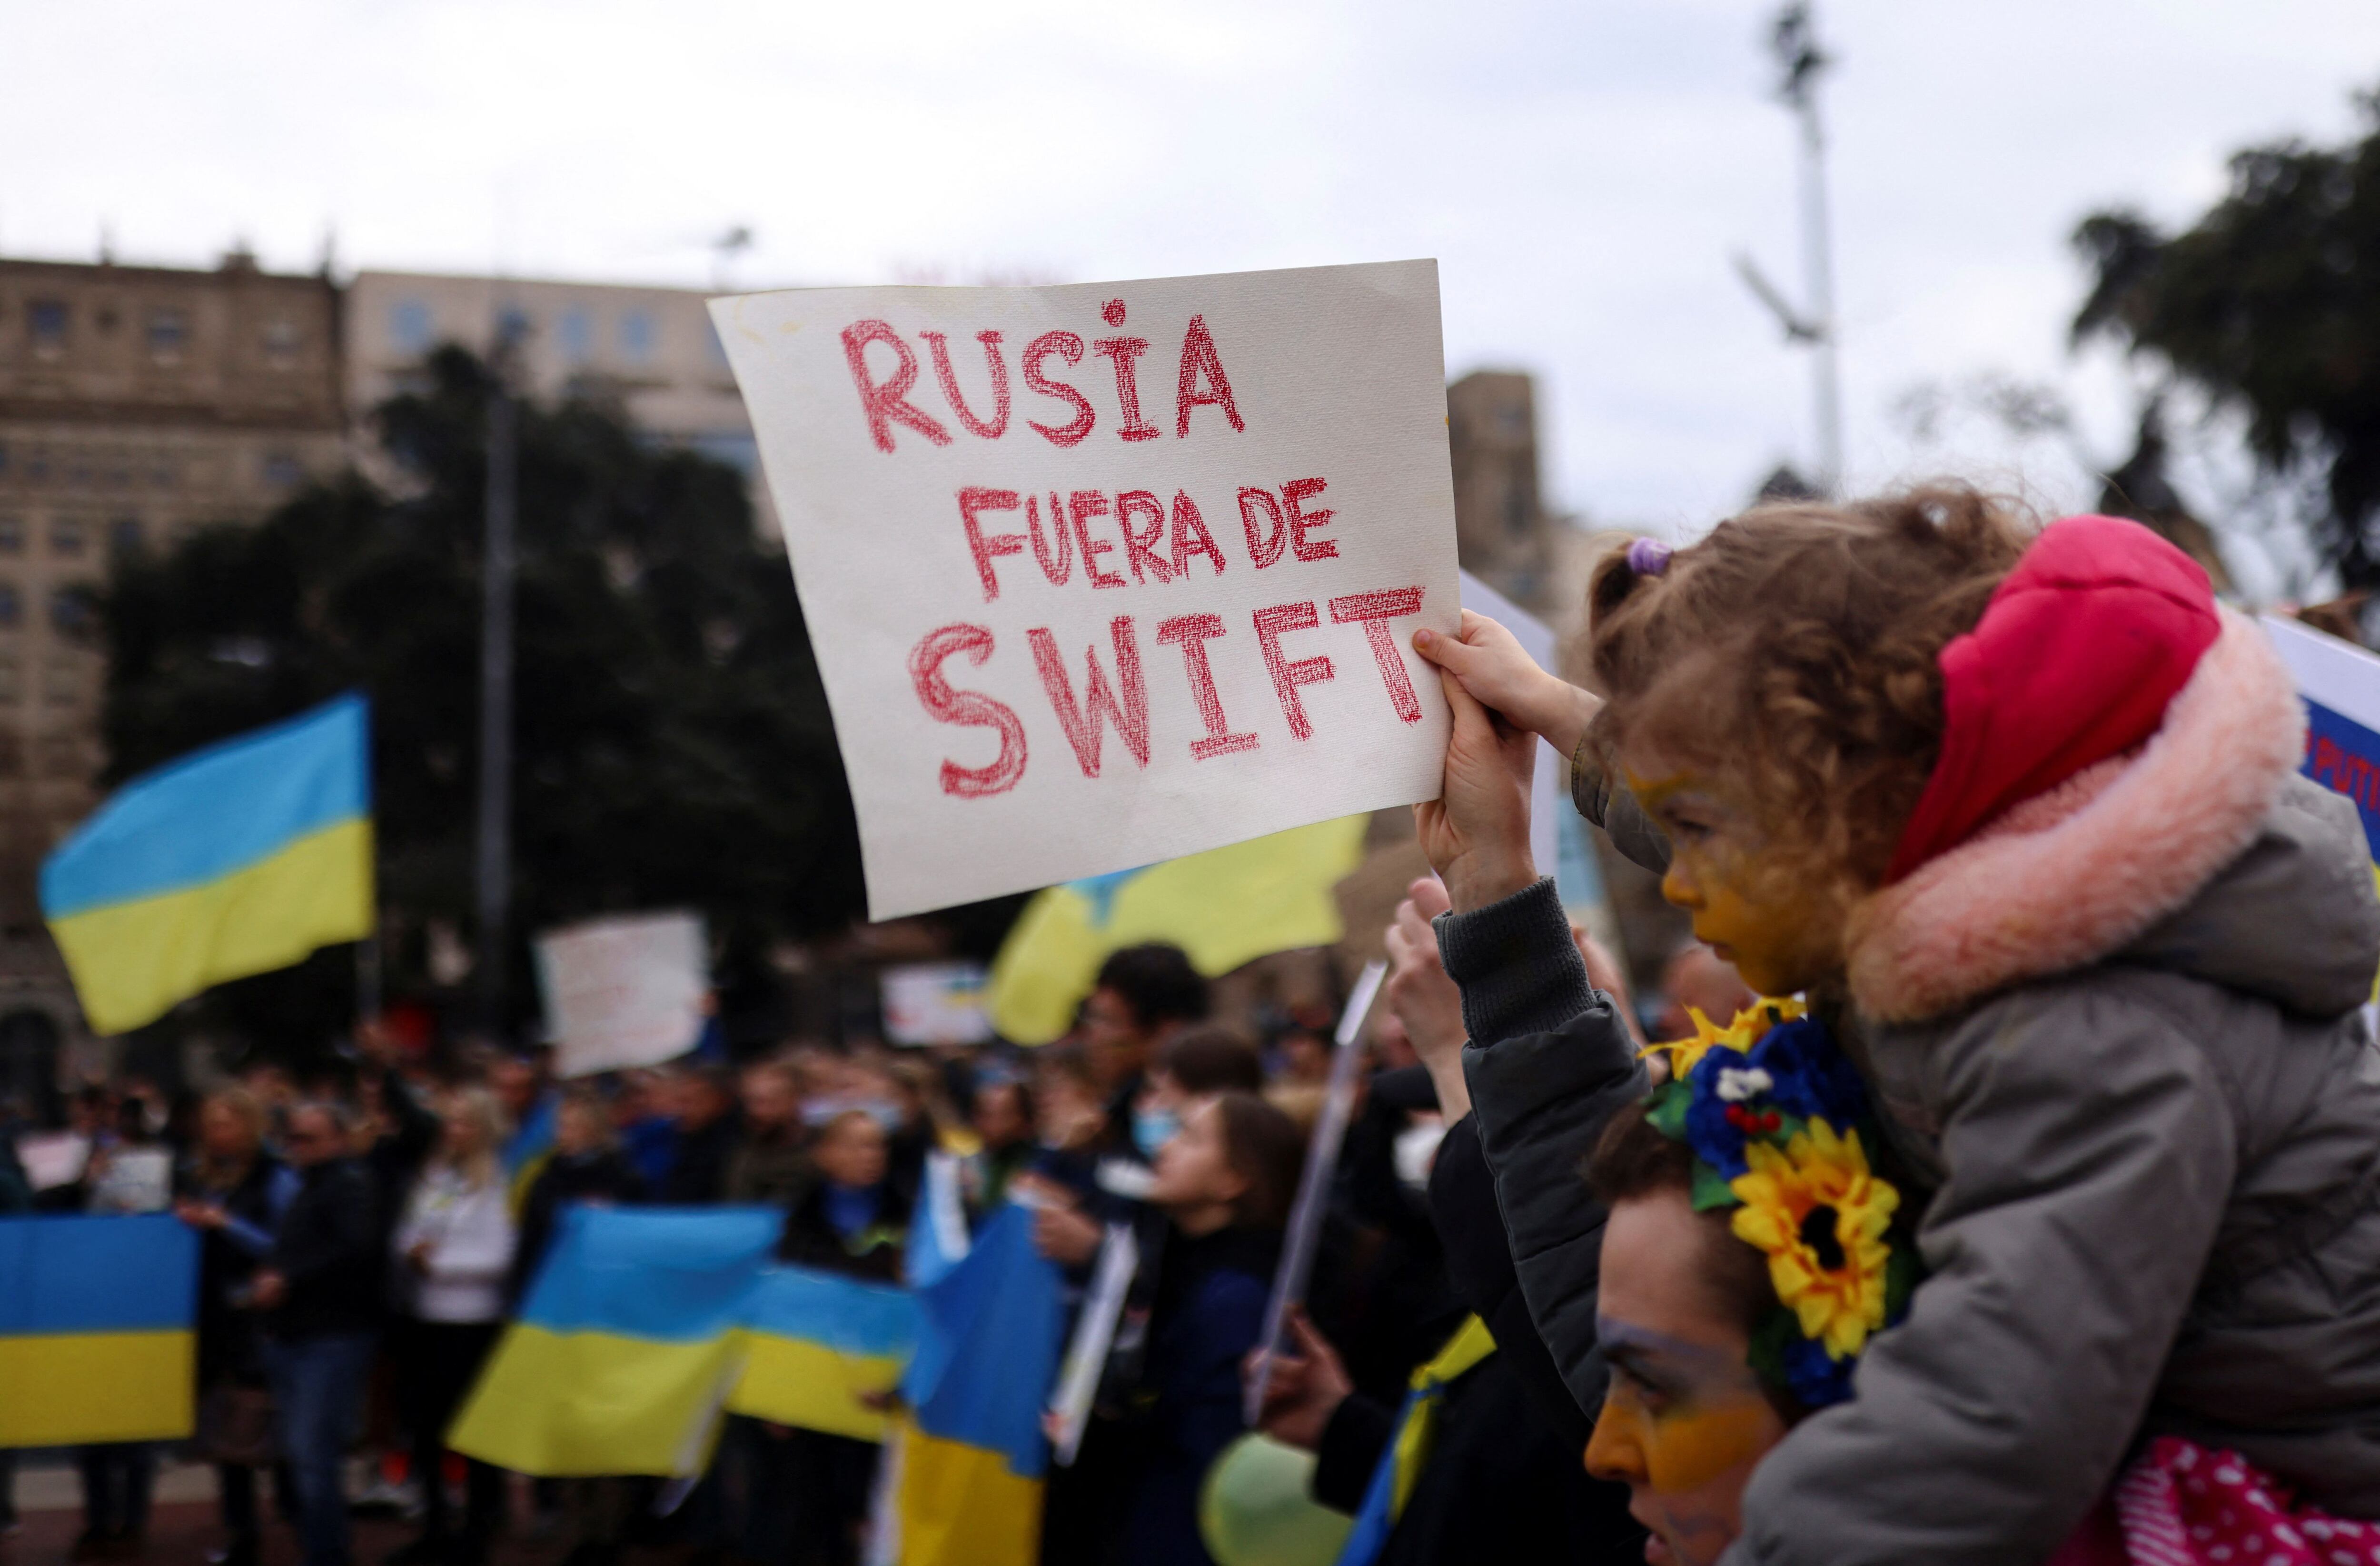 El pedido de sacar a Rusia del SWIFT en una manifestación en Barcelona, España (REUTERS/Nacho Doce)